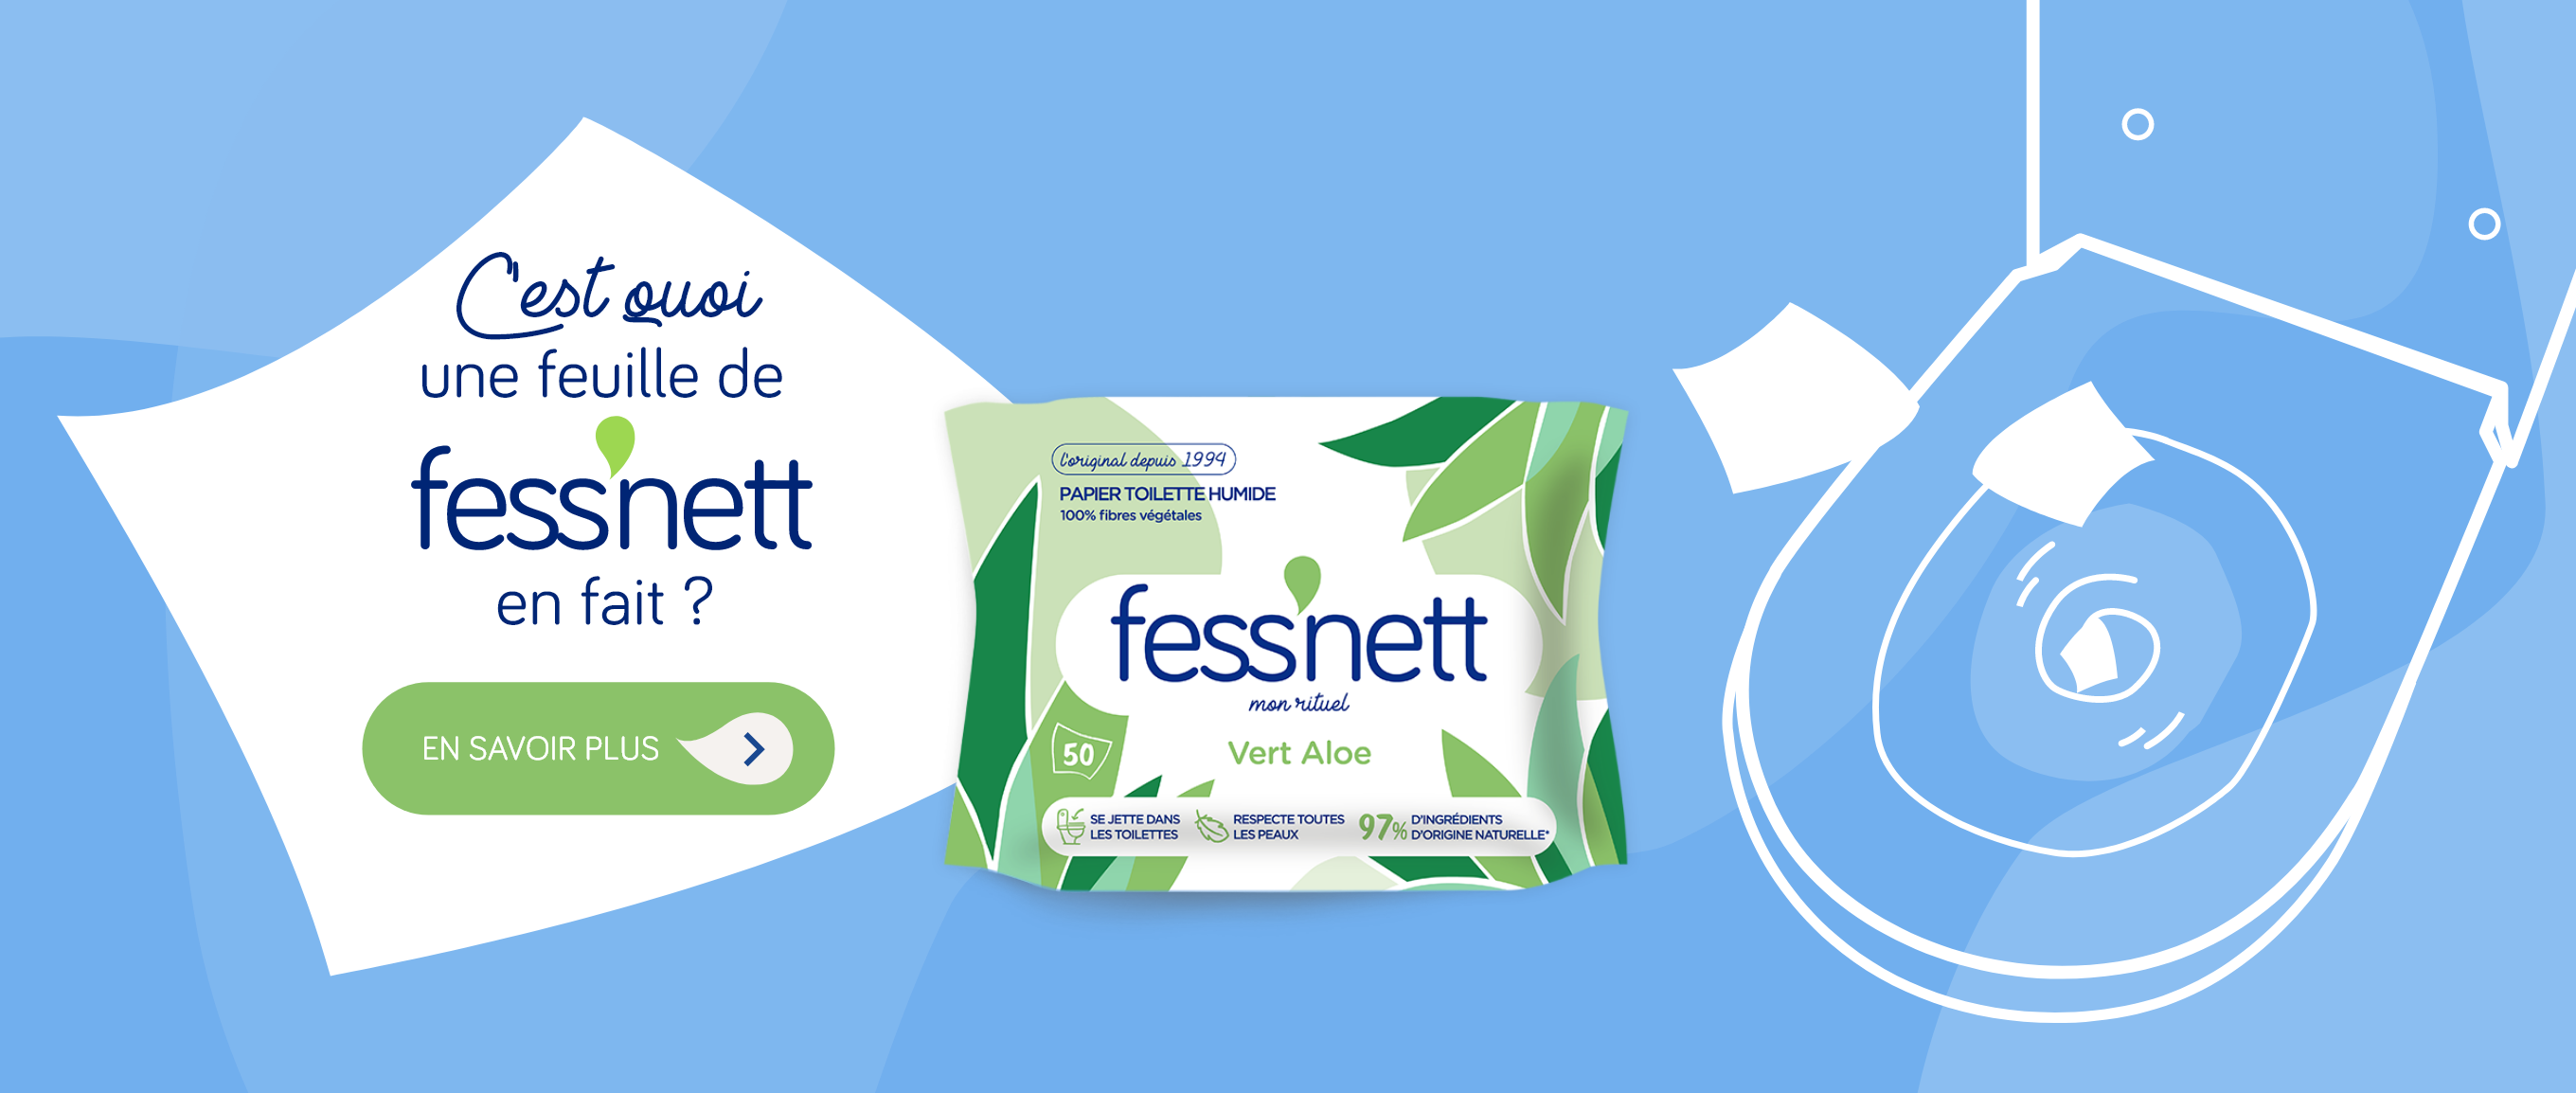 Achat Promotion Fess Net Lingettes papier toilette pour peaux irritées